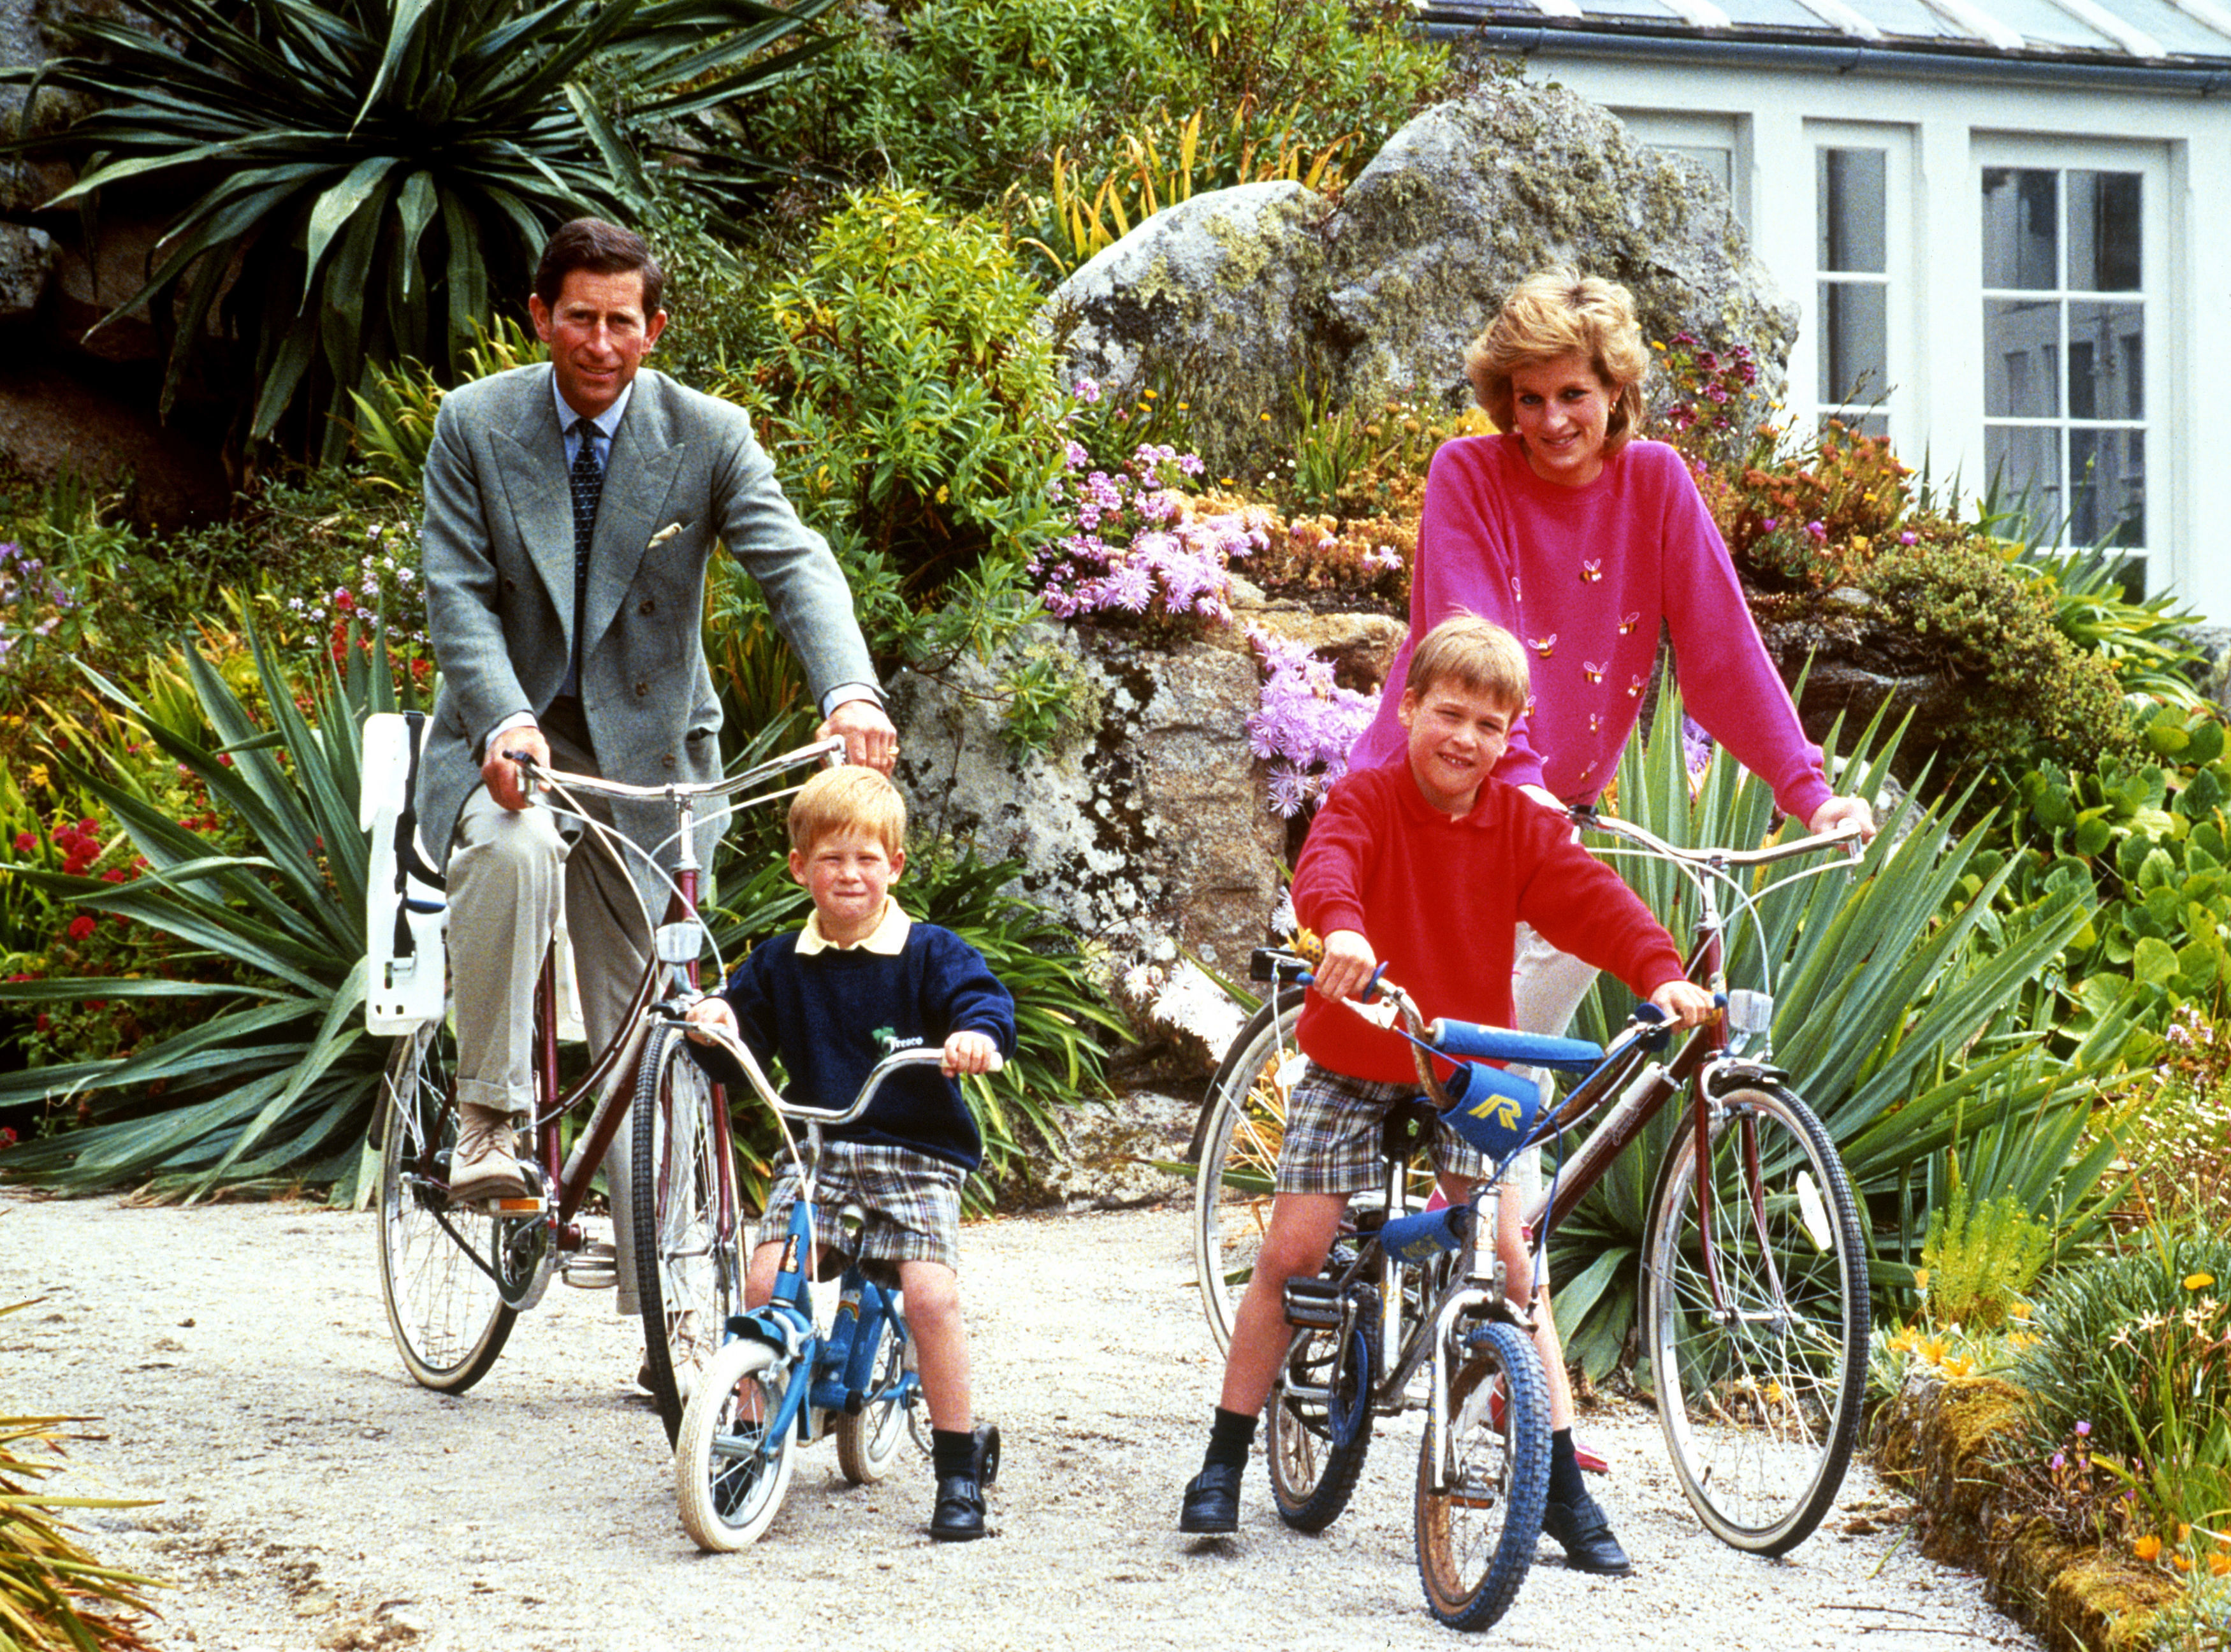 Le roi Charles et Diana, princesse de Galles, ont eu deux fils pendant leur mariage avant leur divorce en 1996.